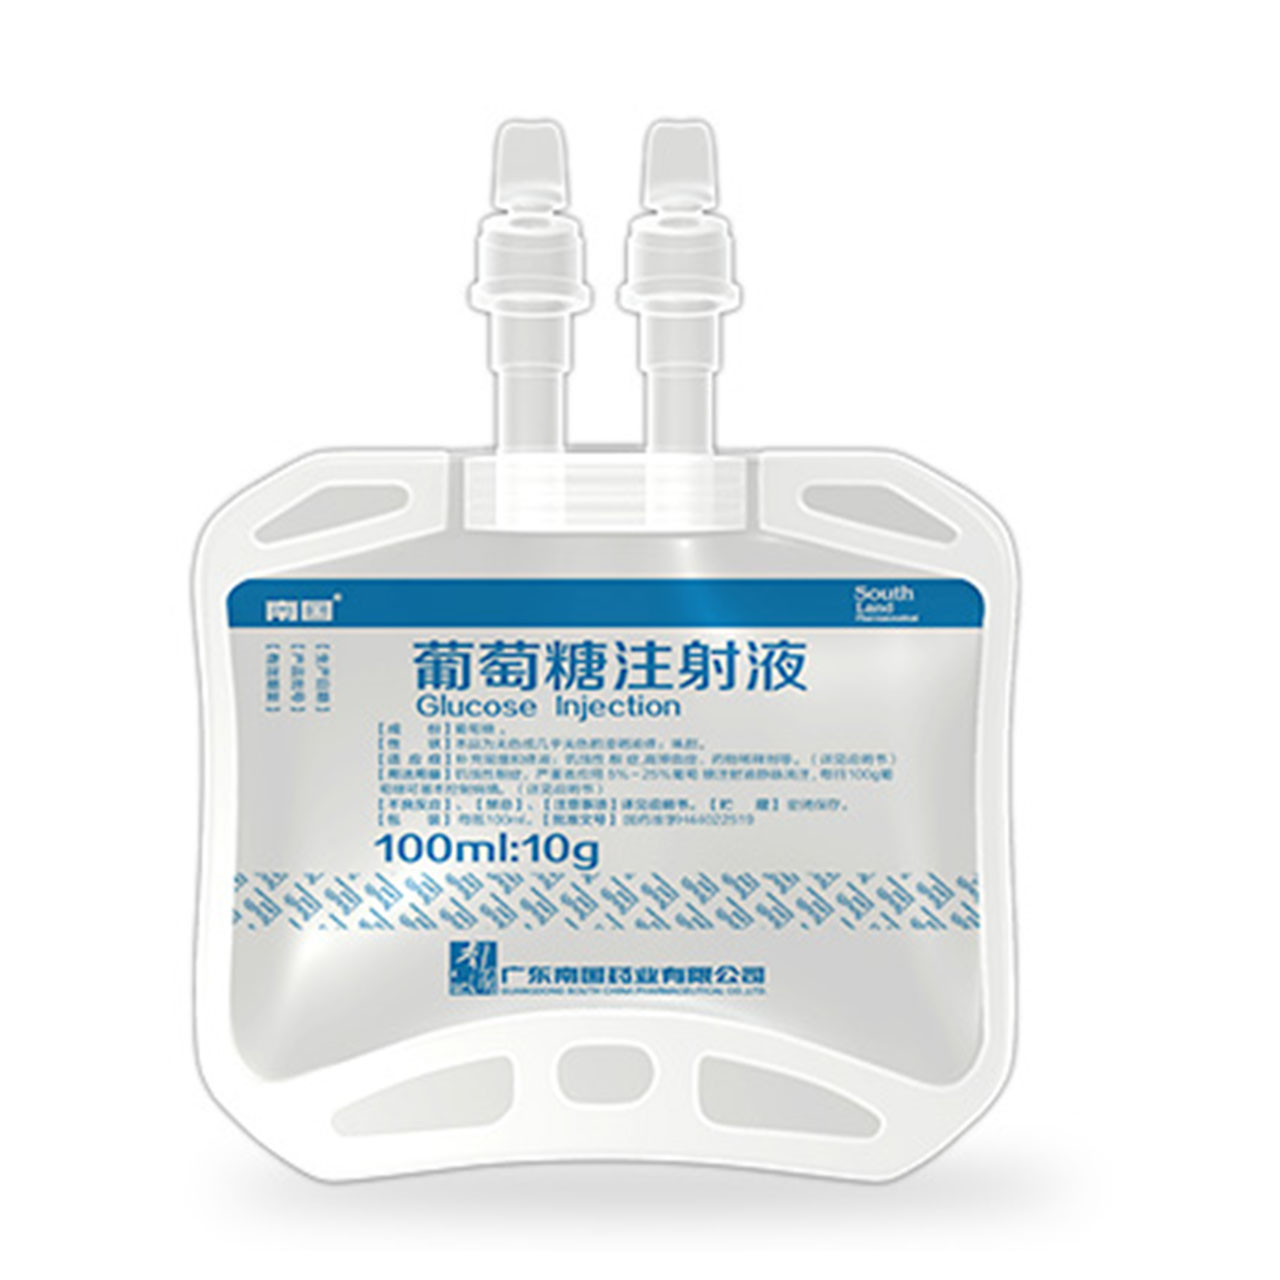 5%葡萄糖注射液（100ml）,贵州天地药业有限责任公司